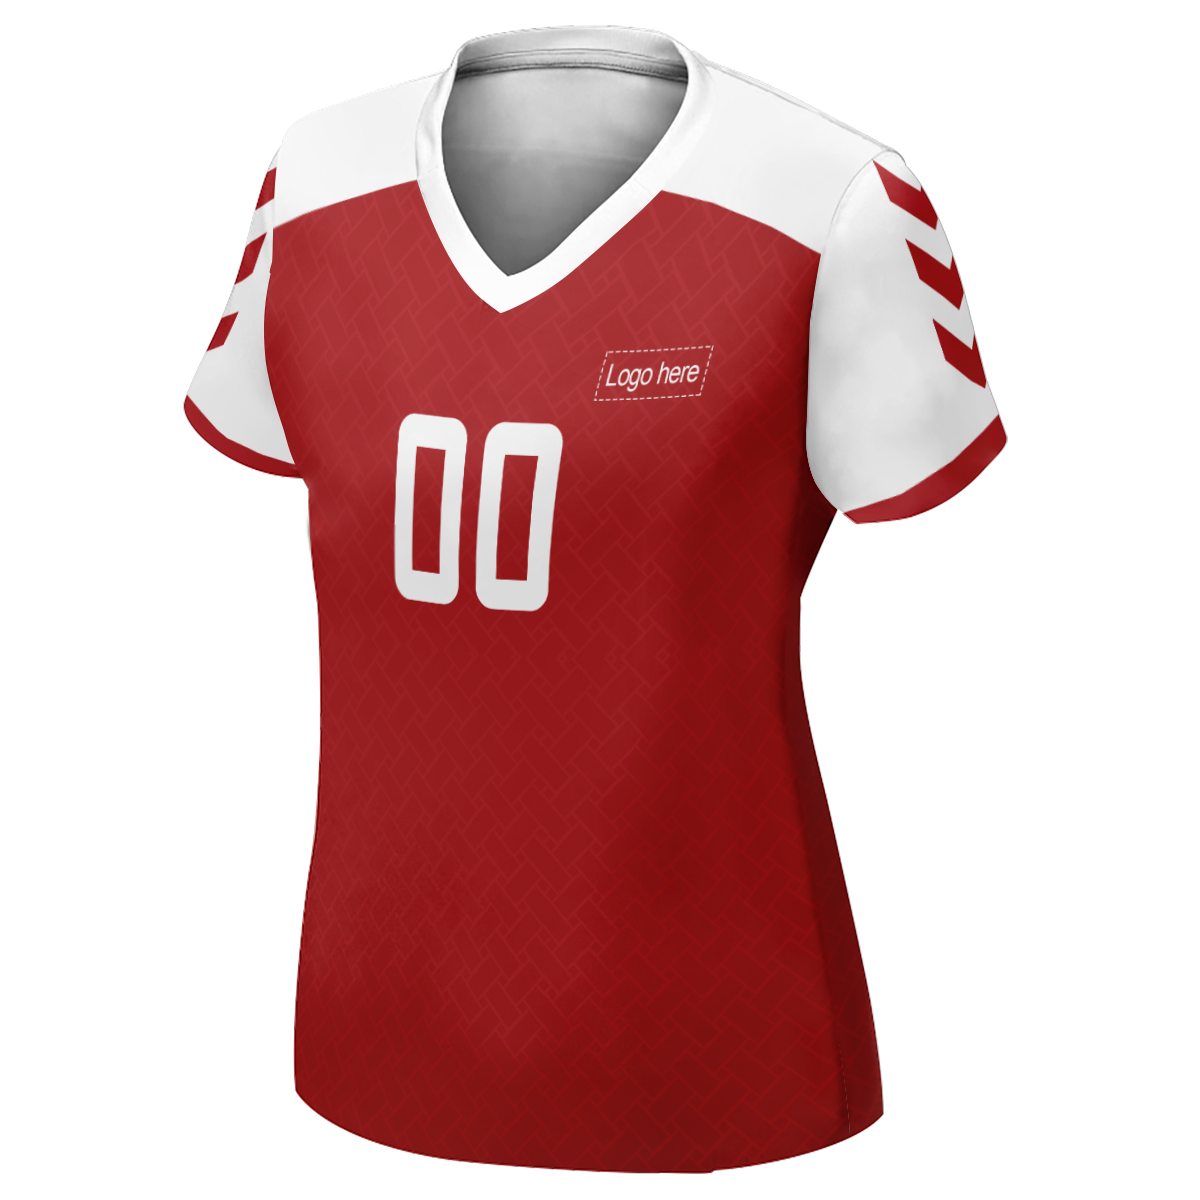 그림이 있는 여성 한정판 덴마크 월드컵 맞춤형 축구 유니폼